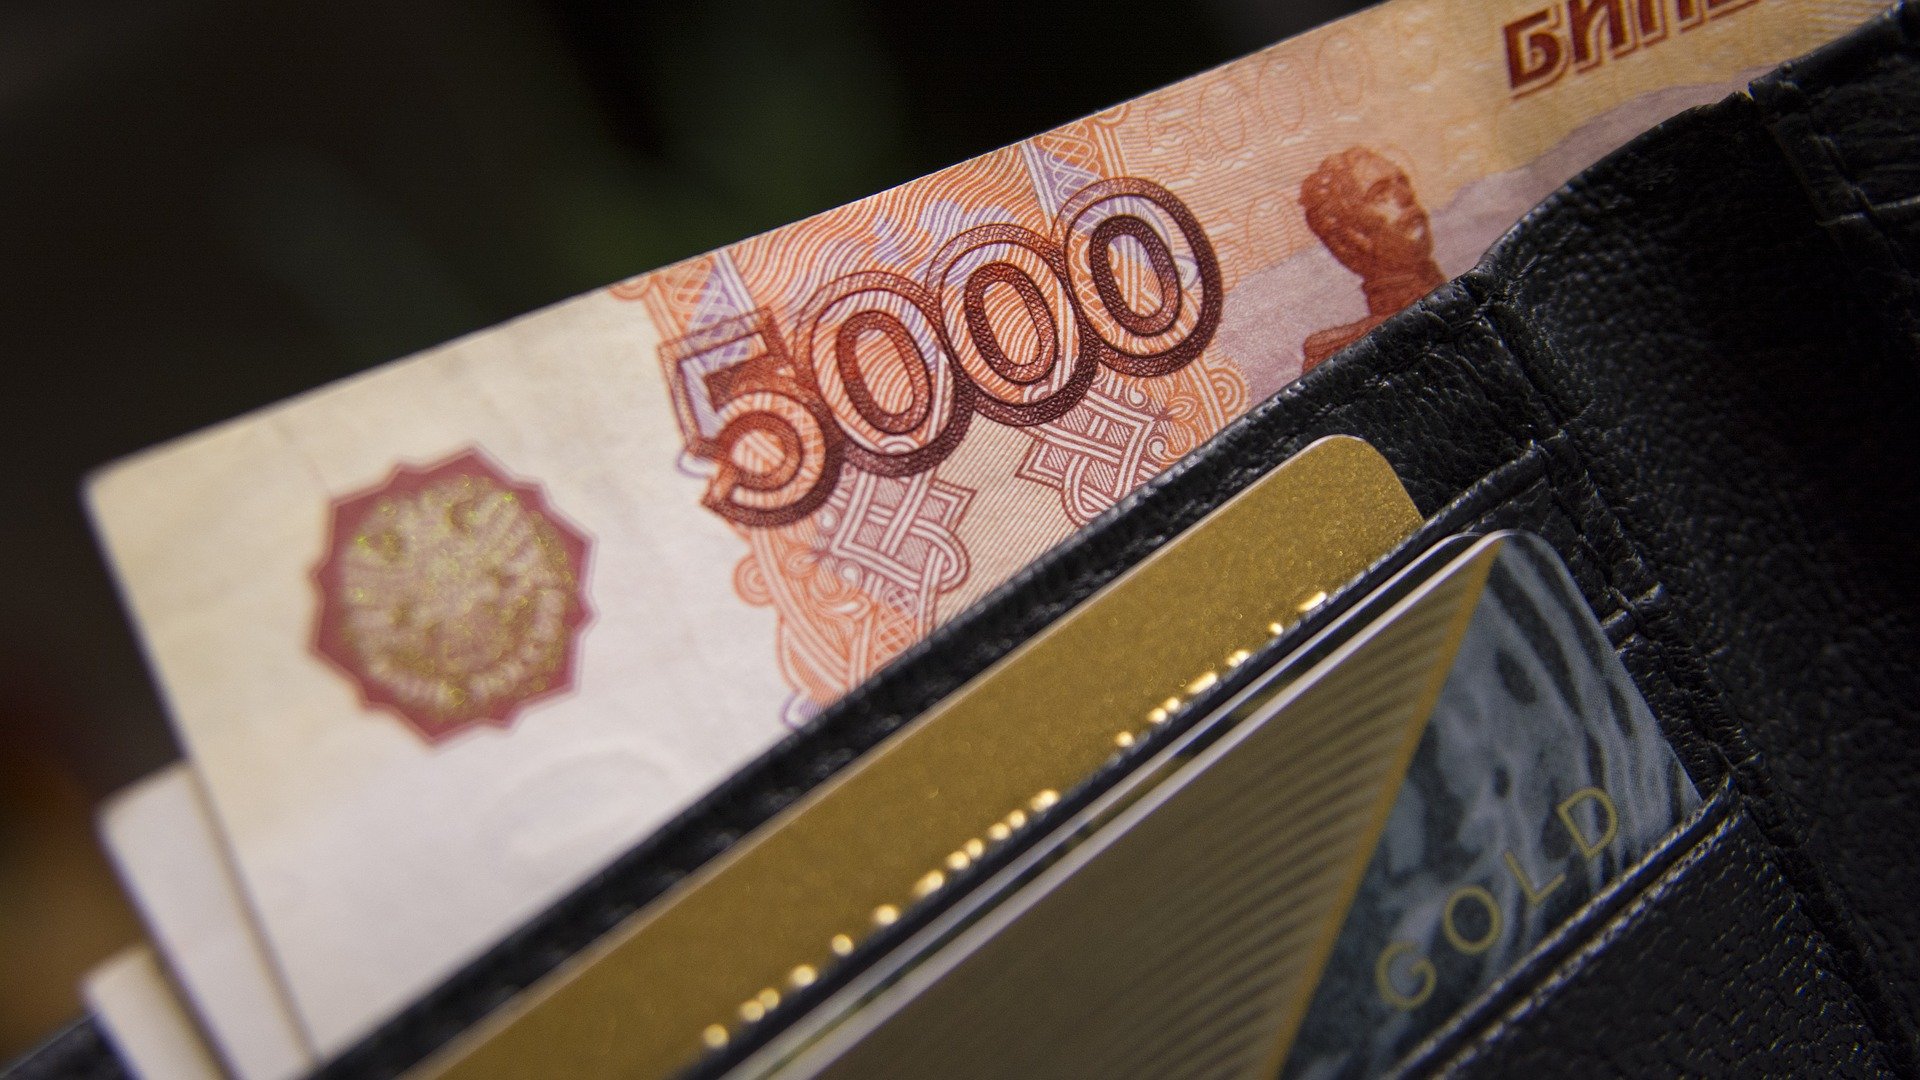 Количество поддельных банкнот Тульской области сократилось в двое